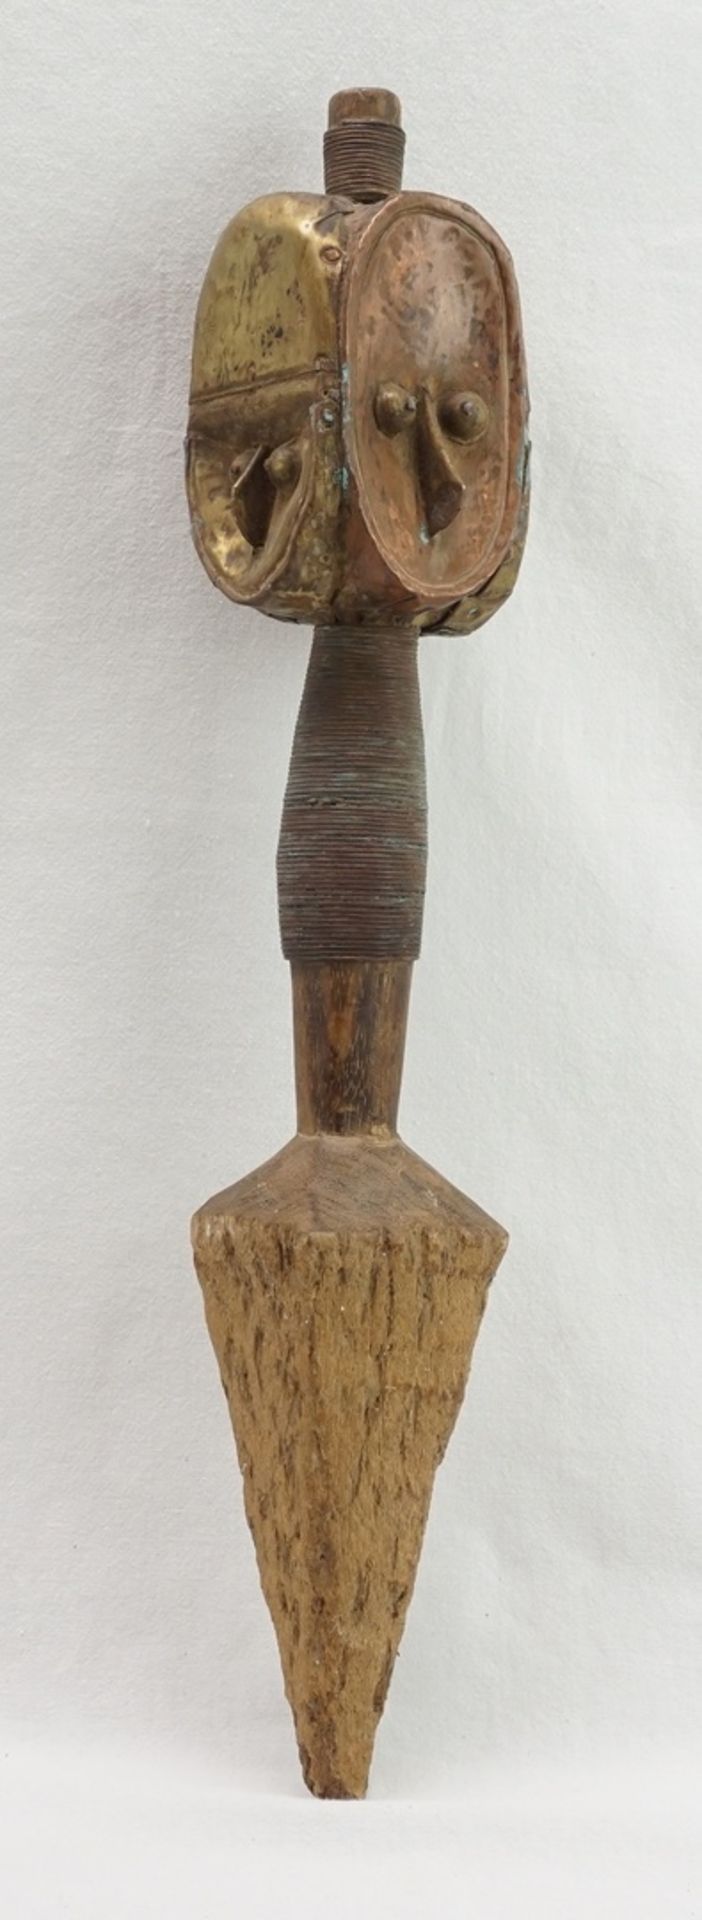 Reliquiarfigur der Bakota / Koto, Gabun, 1. Hälfte 20. Jh.Holz, Skulptur mit vier ovalen